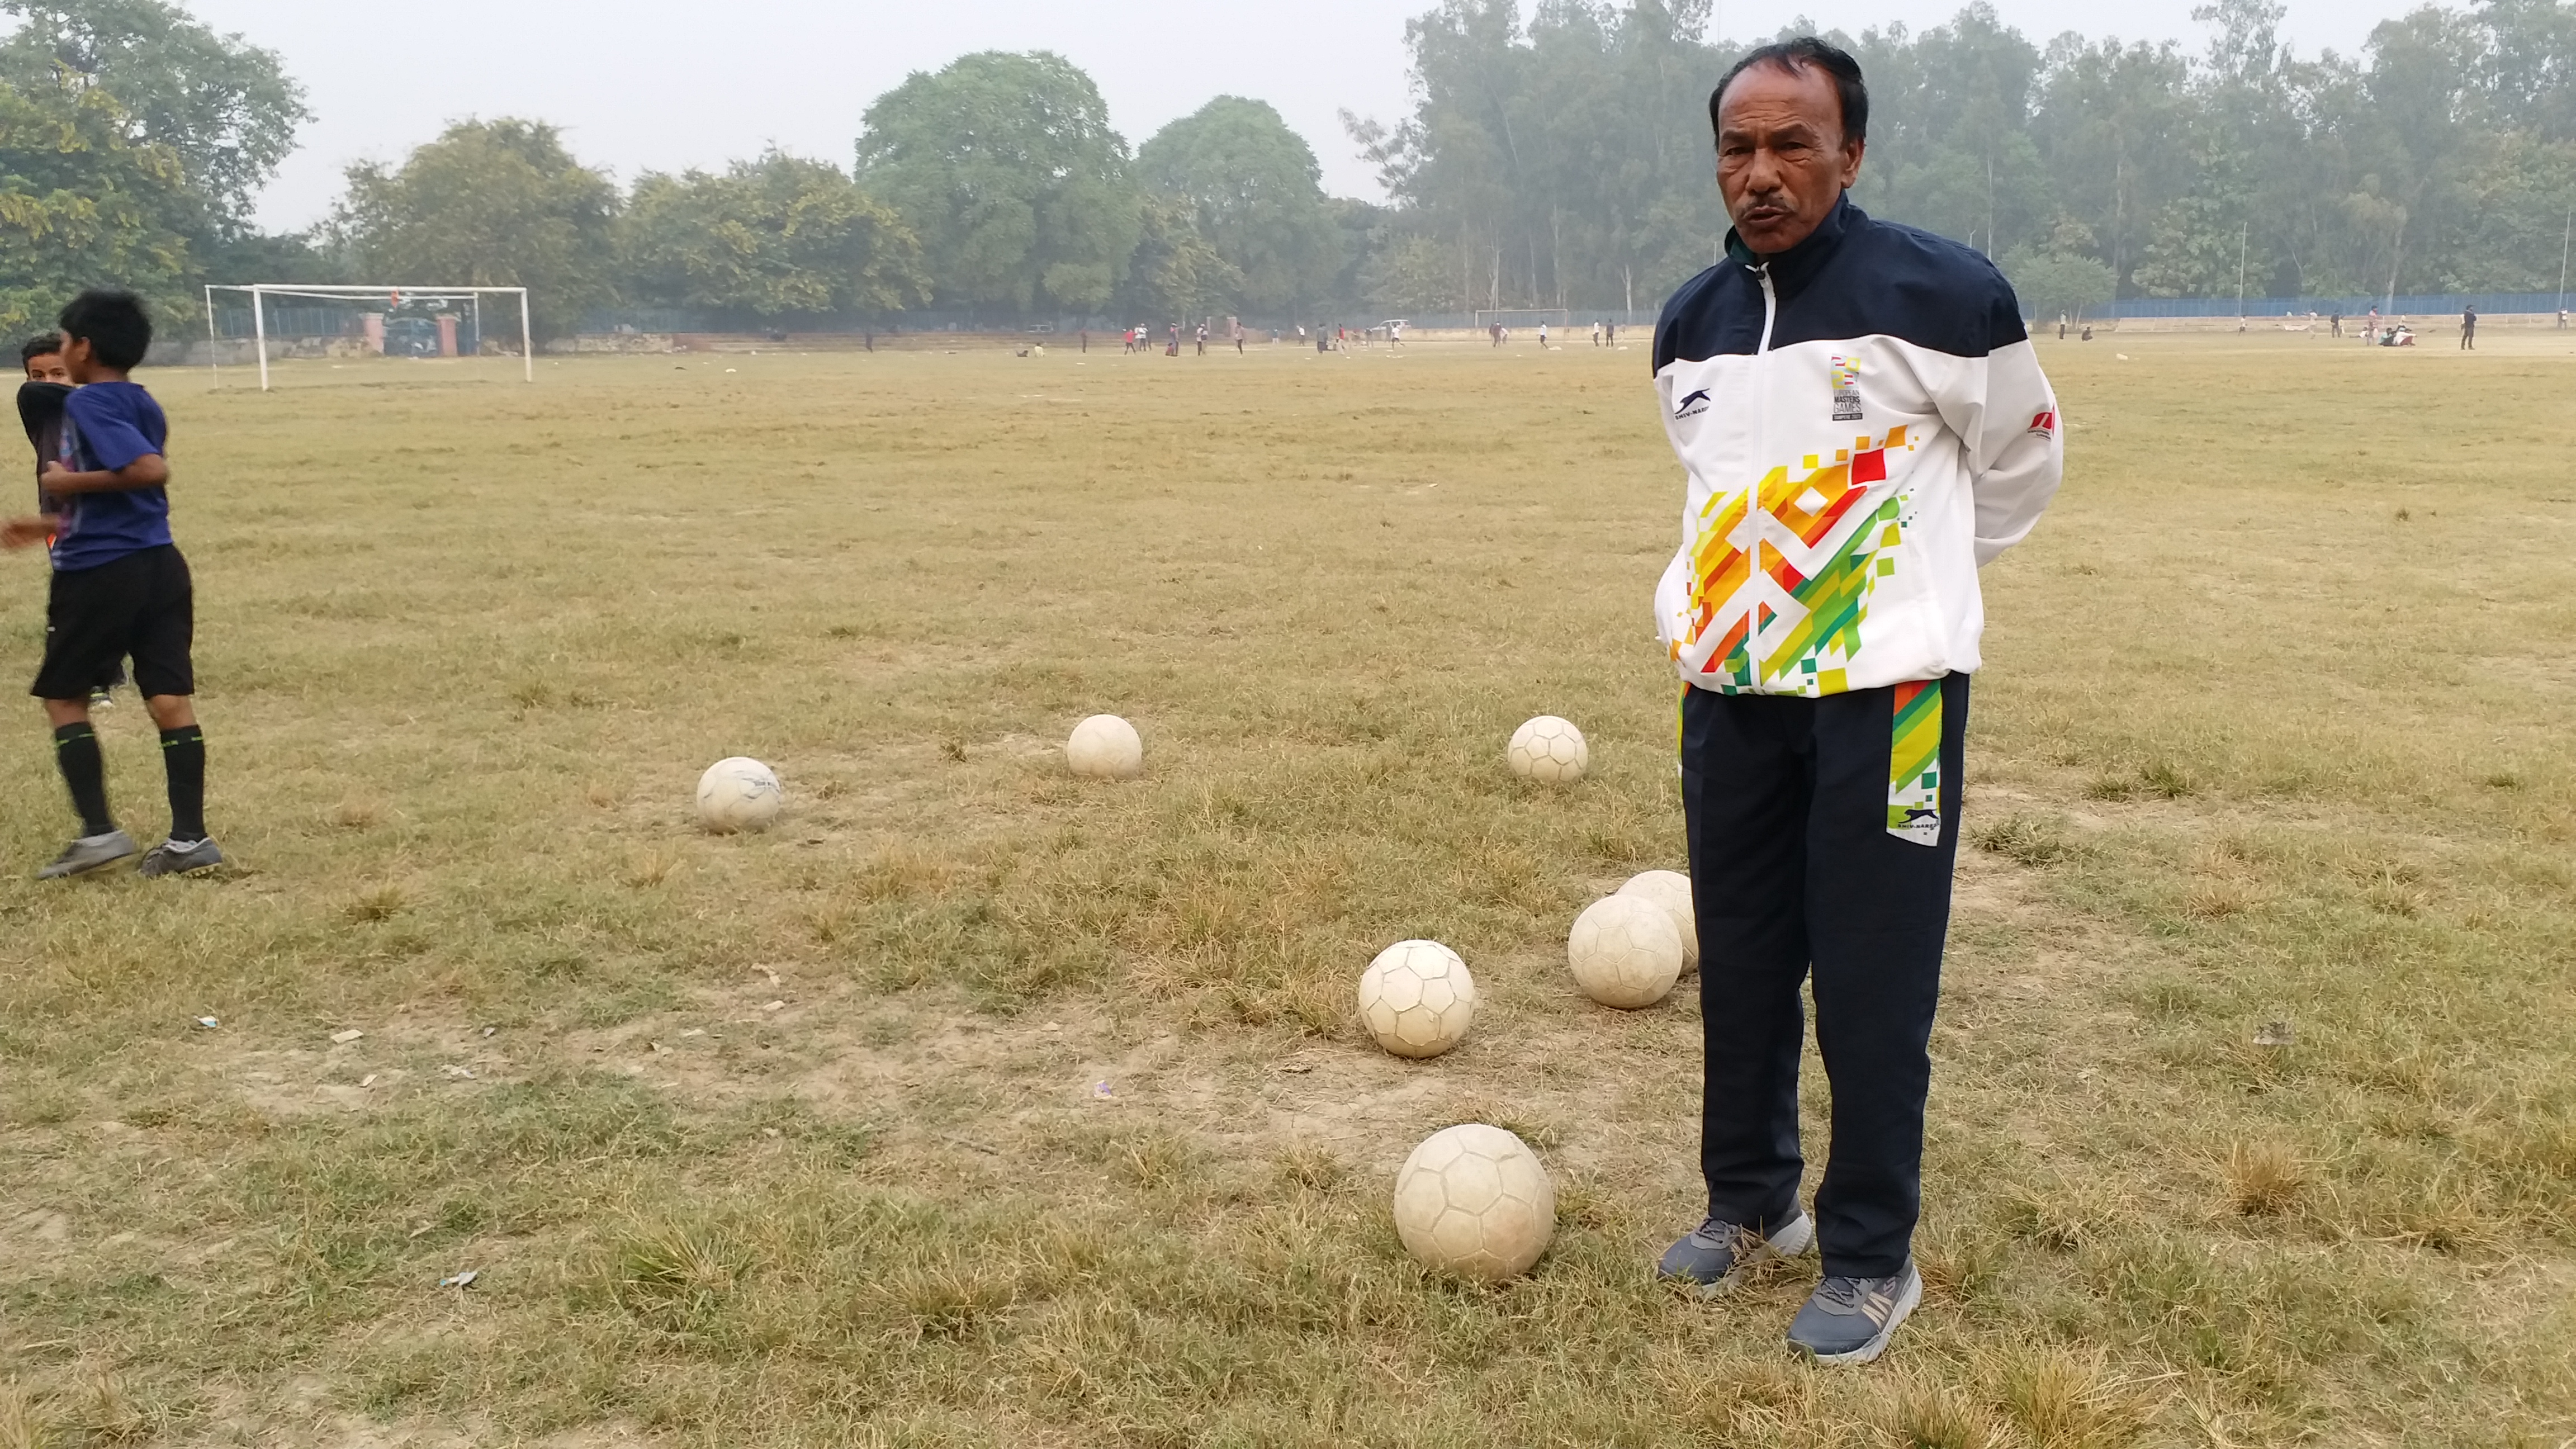 भैरव दत्त कई सालों से बच्चियों को फुटबॉल खेलना सिखा रहे हैं.